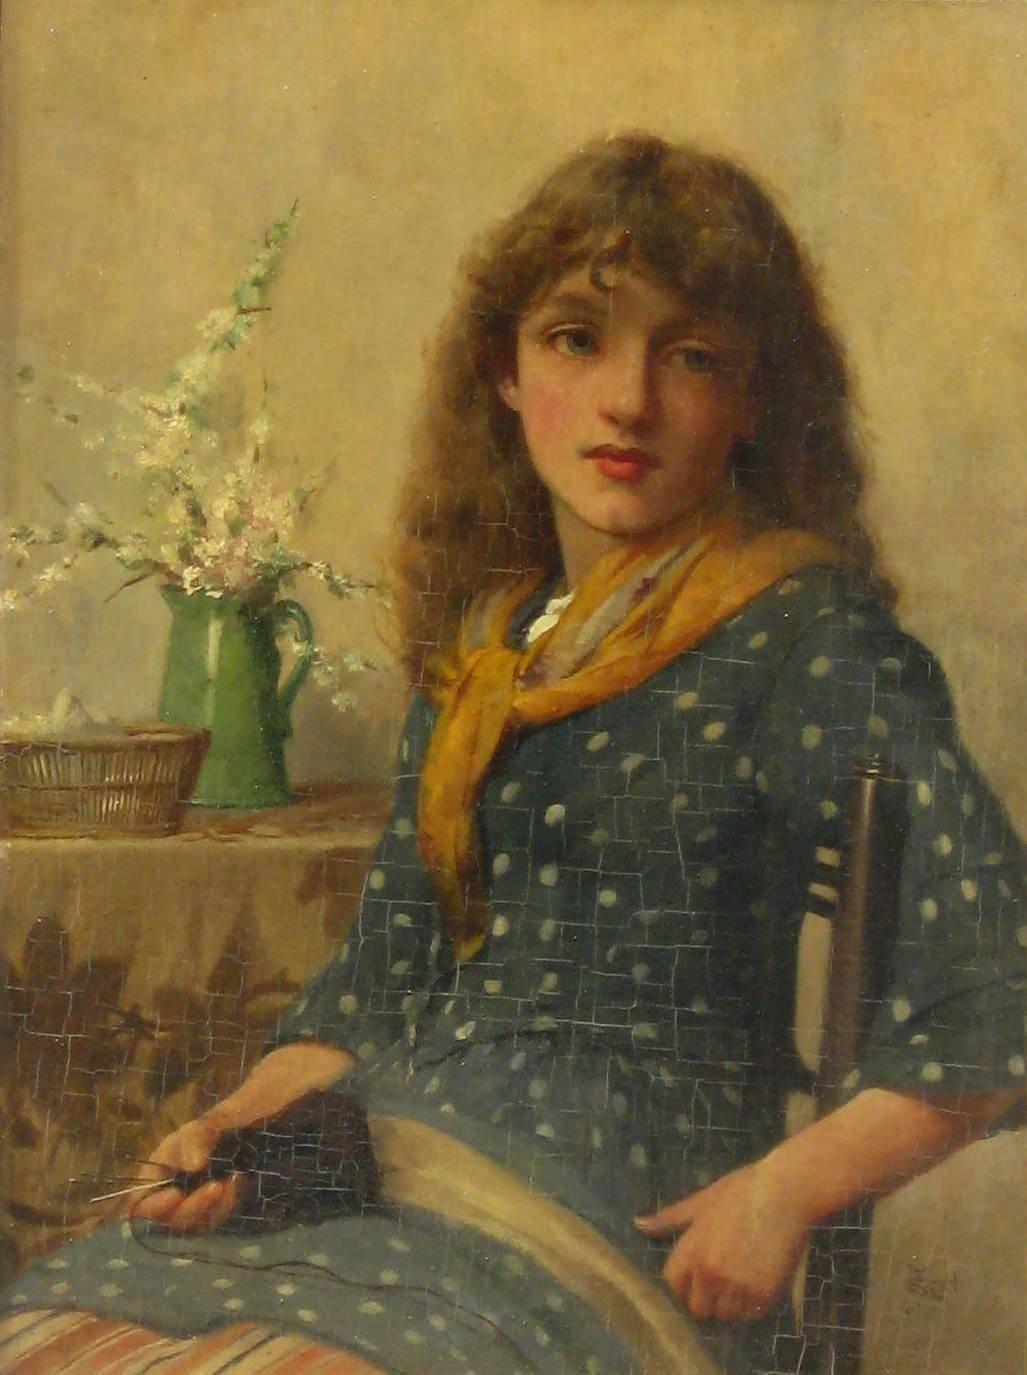 John Scott (1850-1918) Britischer Figuren- und Genremaler. Öl auf Karton in gutem Zustand, unter Glas gerahmt.
Maße: 12 7/8